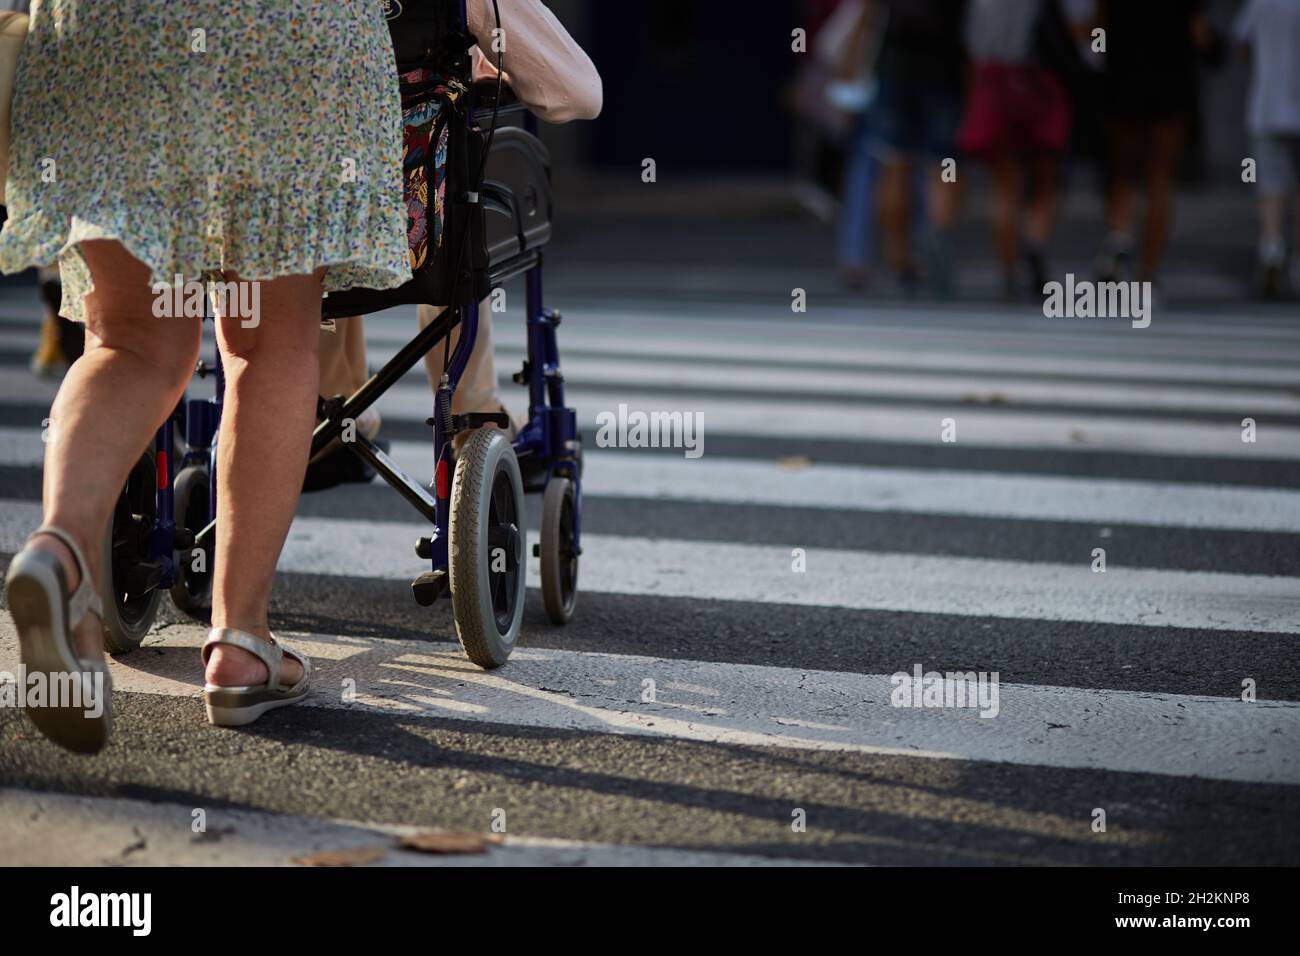 Frau hilft, die Straße zu überqueren eine Person in einem Rollstuhl. Stockfoto